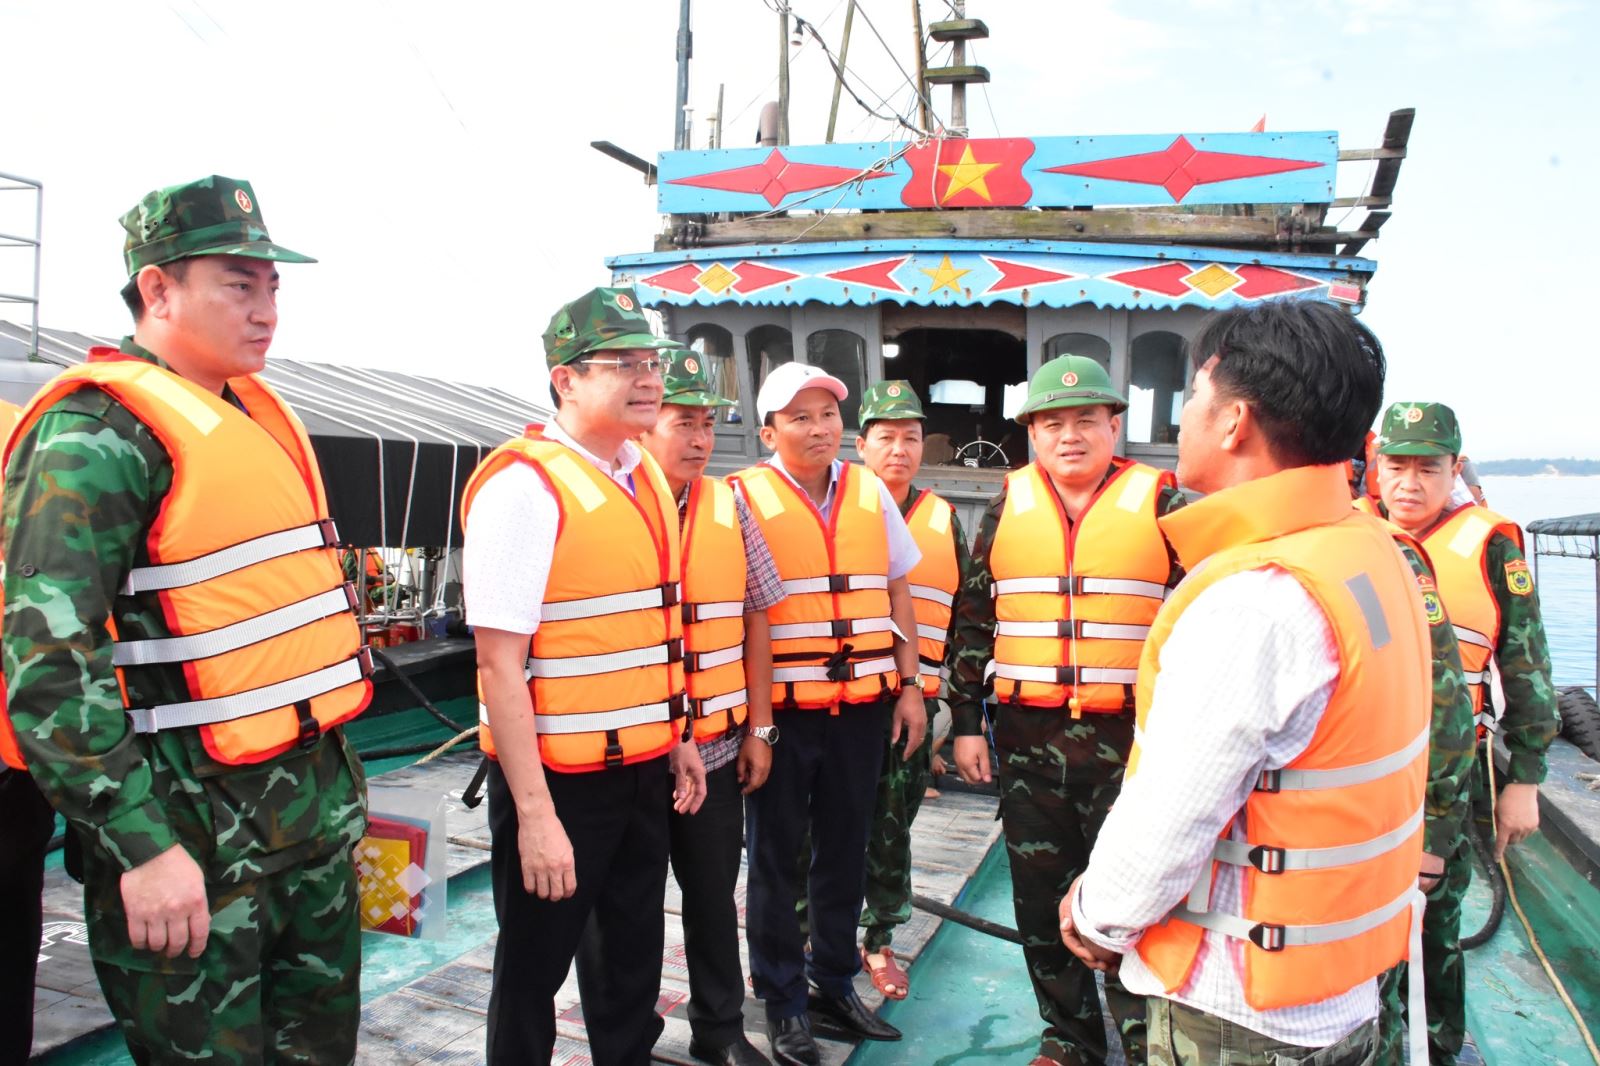 Tỉnh Thừa Thiên Huế vừa ban hành quyết định thành lập Văn phòng Đại diện thanh tra, kiểm soát nghề cá tỉnh Thừa Thiên Huế.